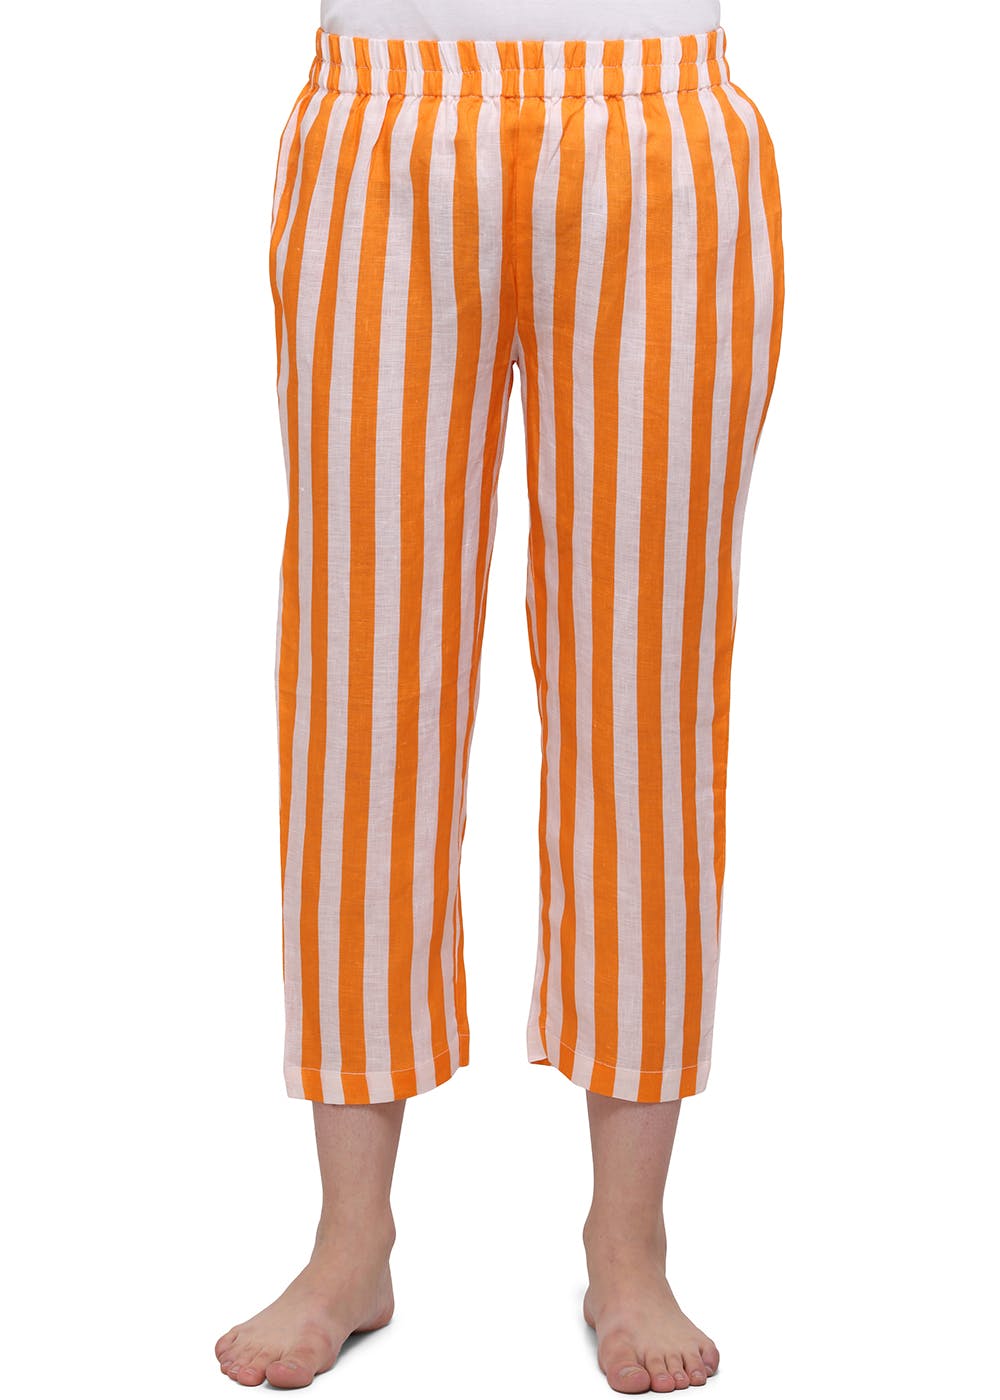 Orange & White Striped Pyjamas